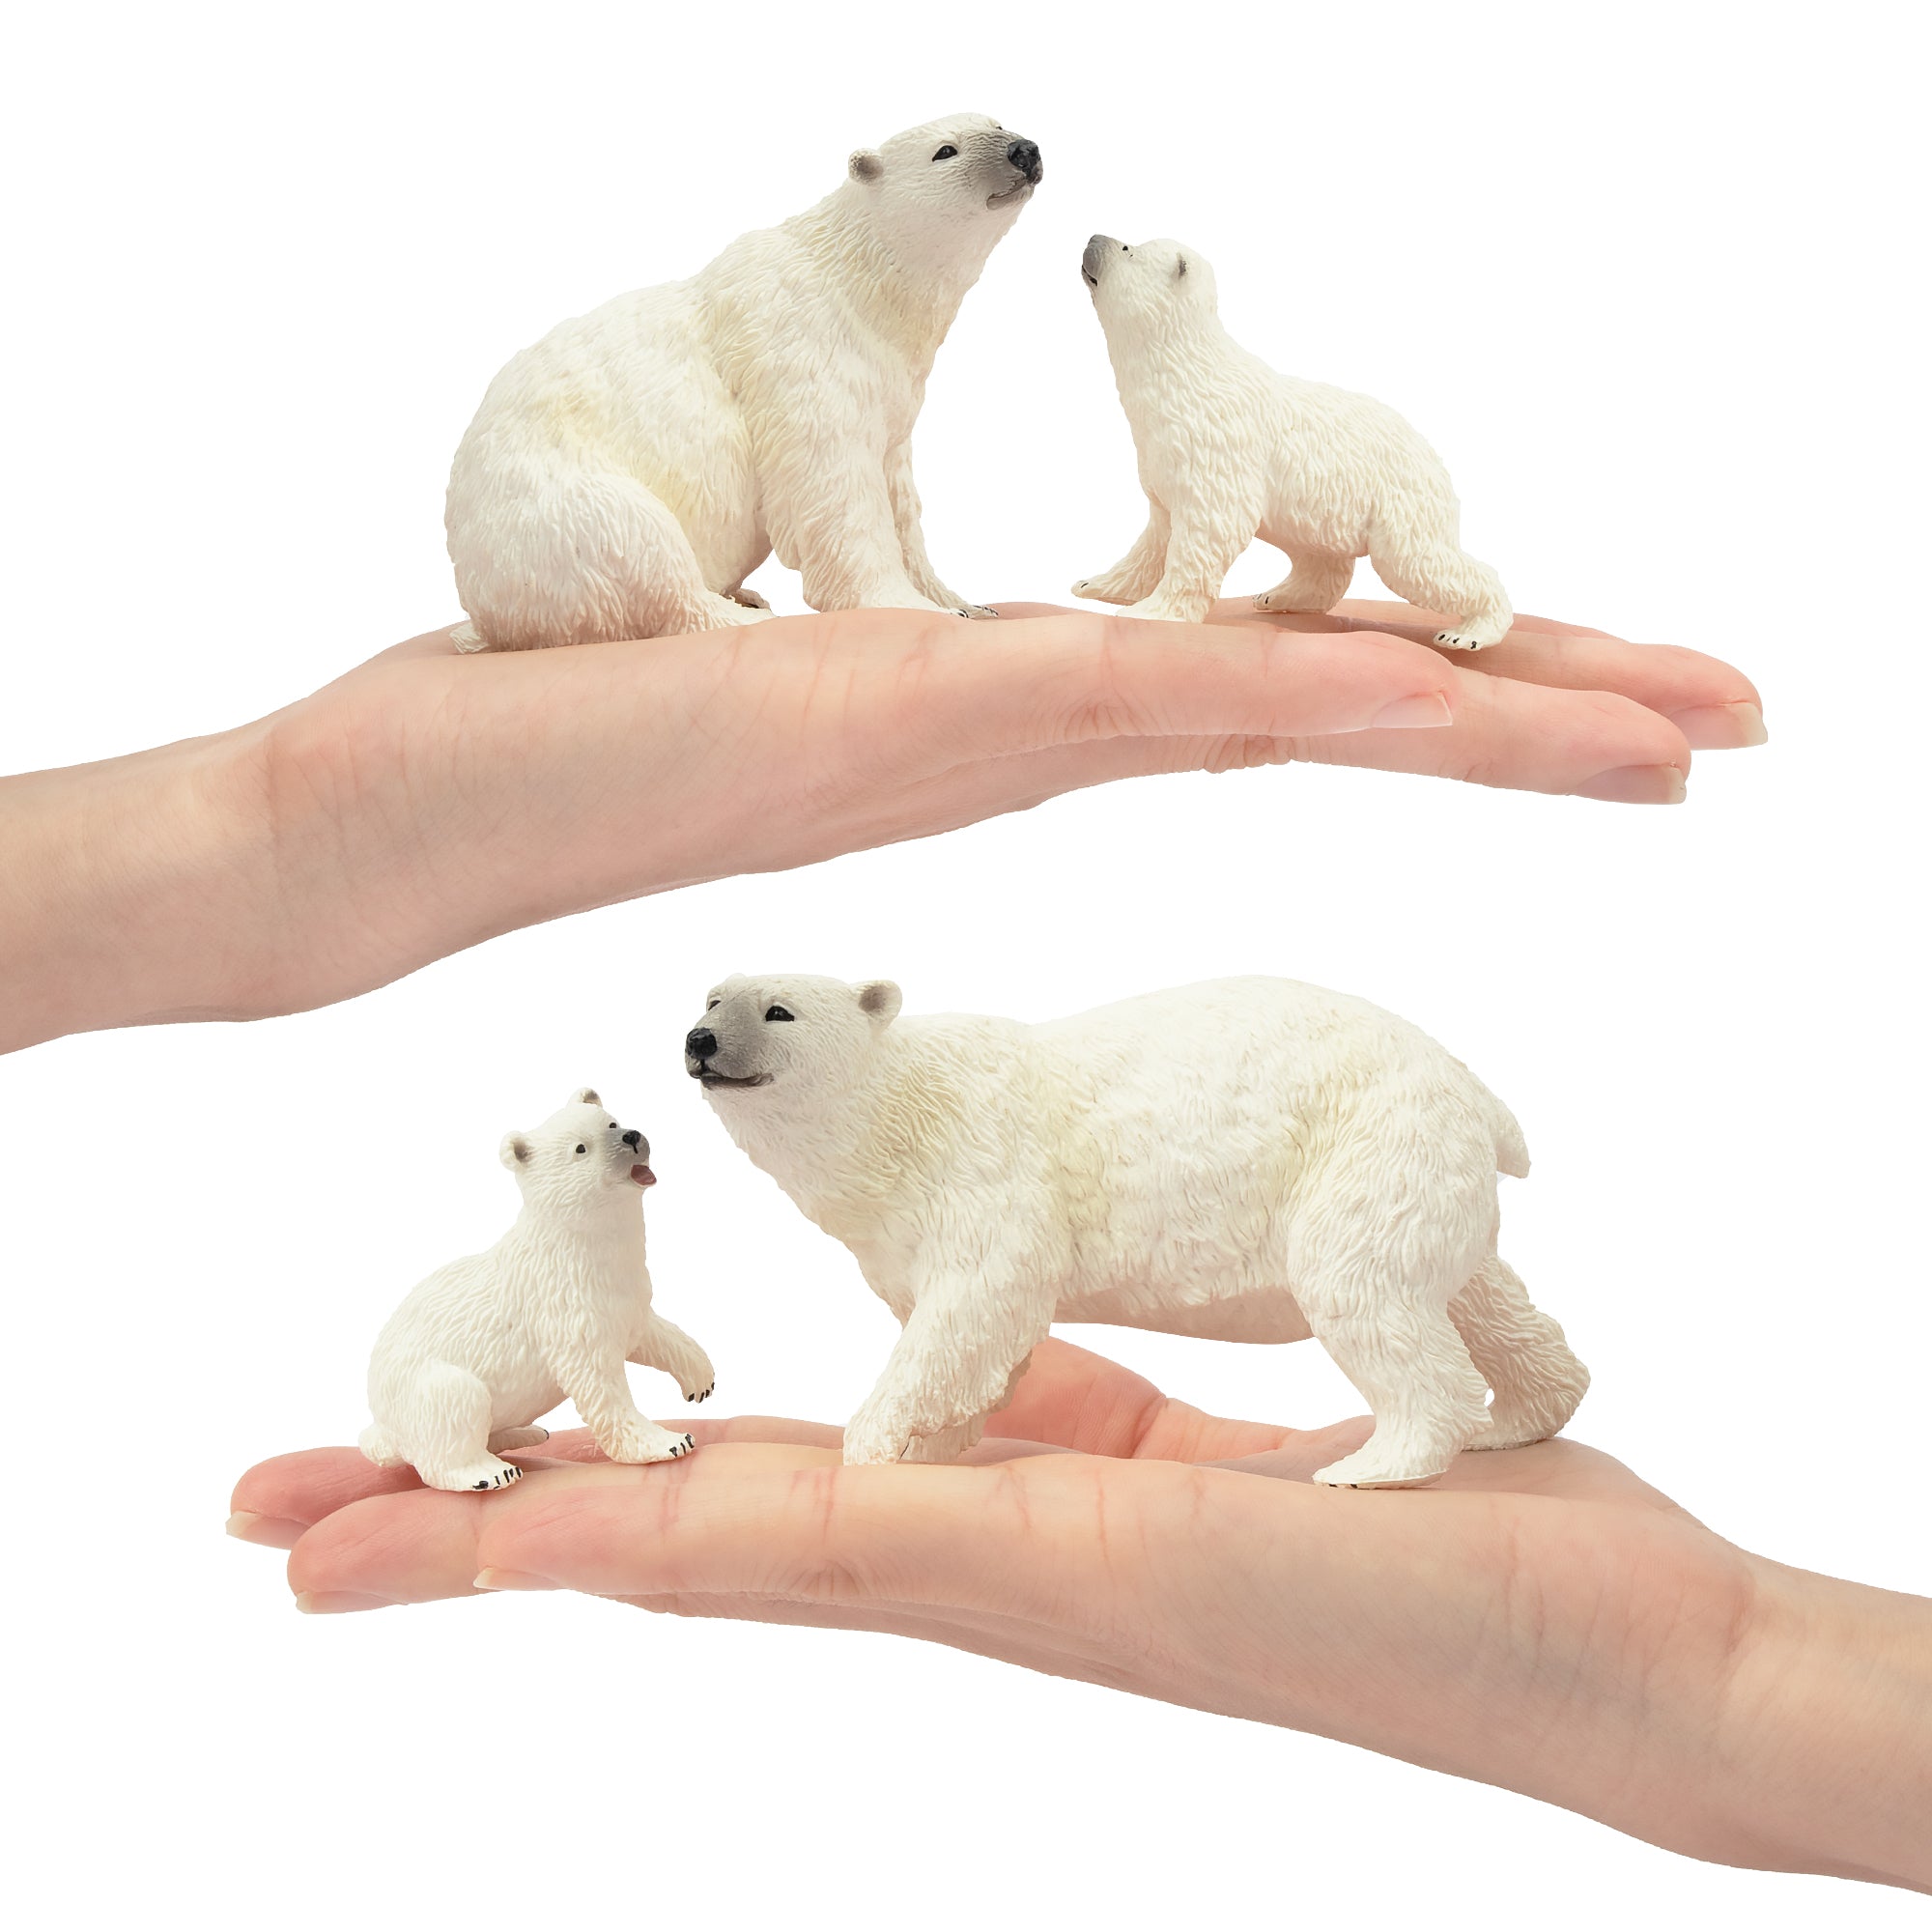 6-Piece Polar Bear Family Figurines Playset with Adult & Baby Polar Bear-on hand